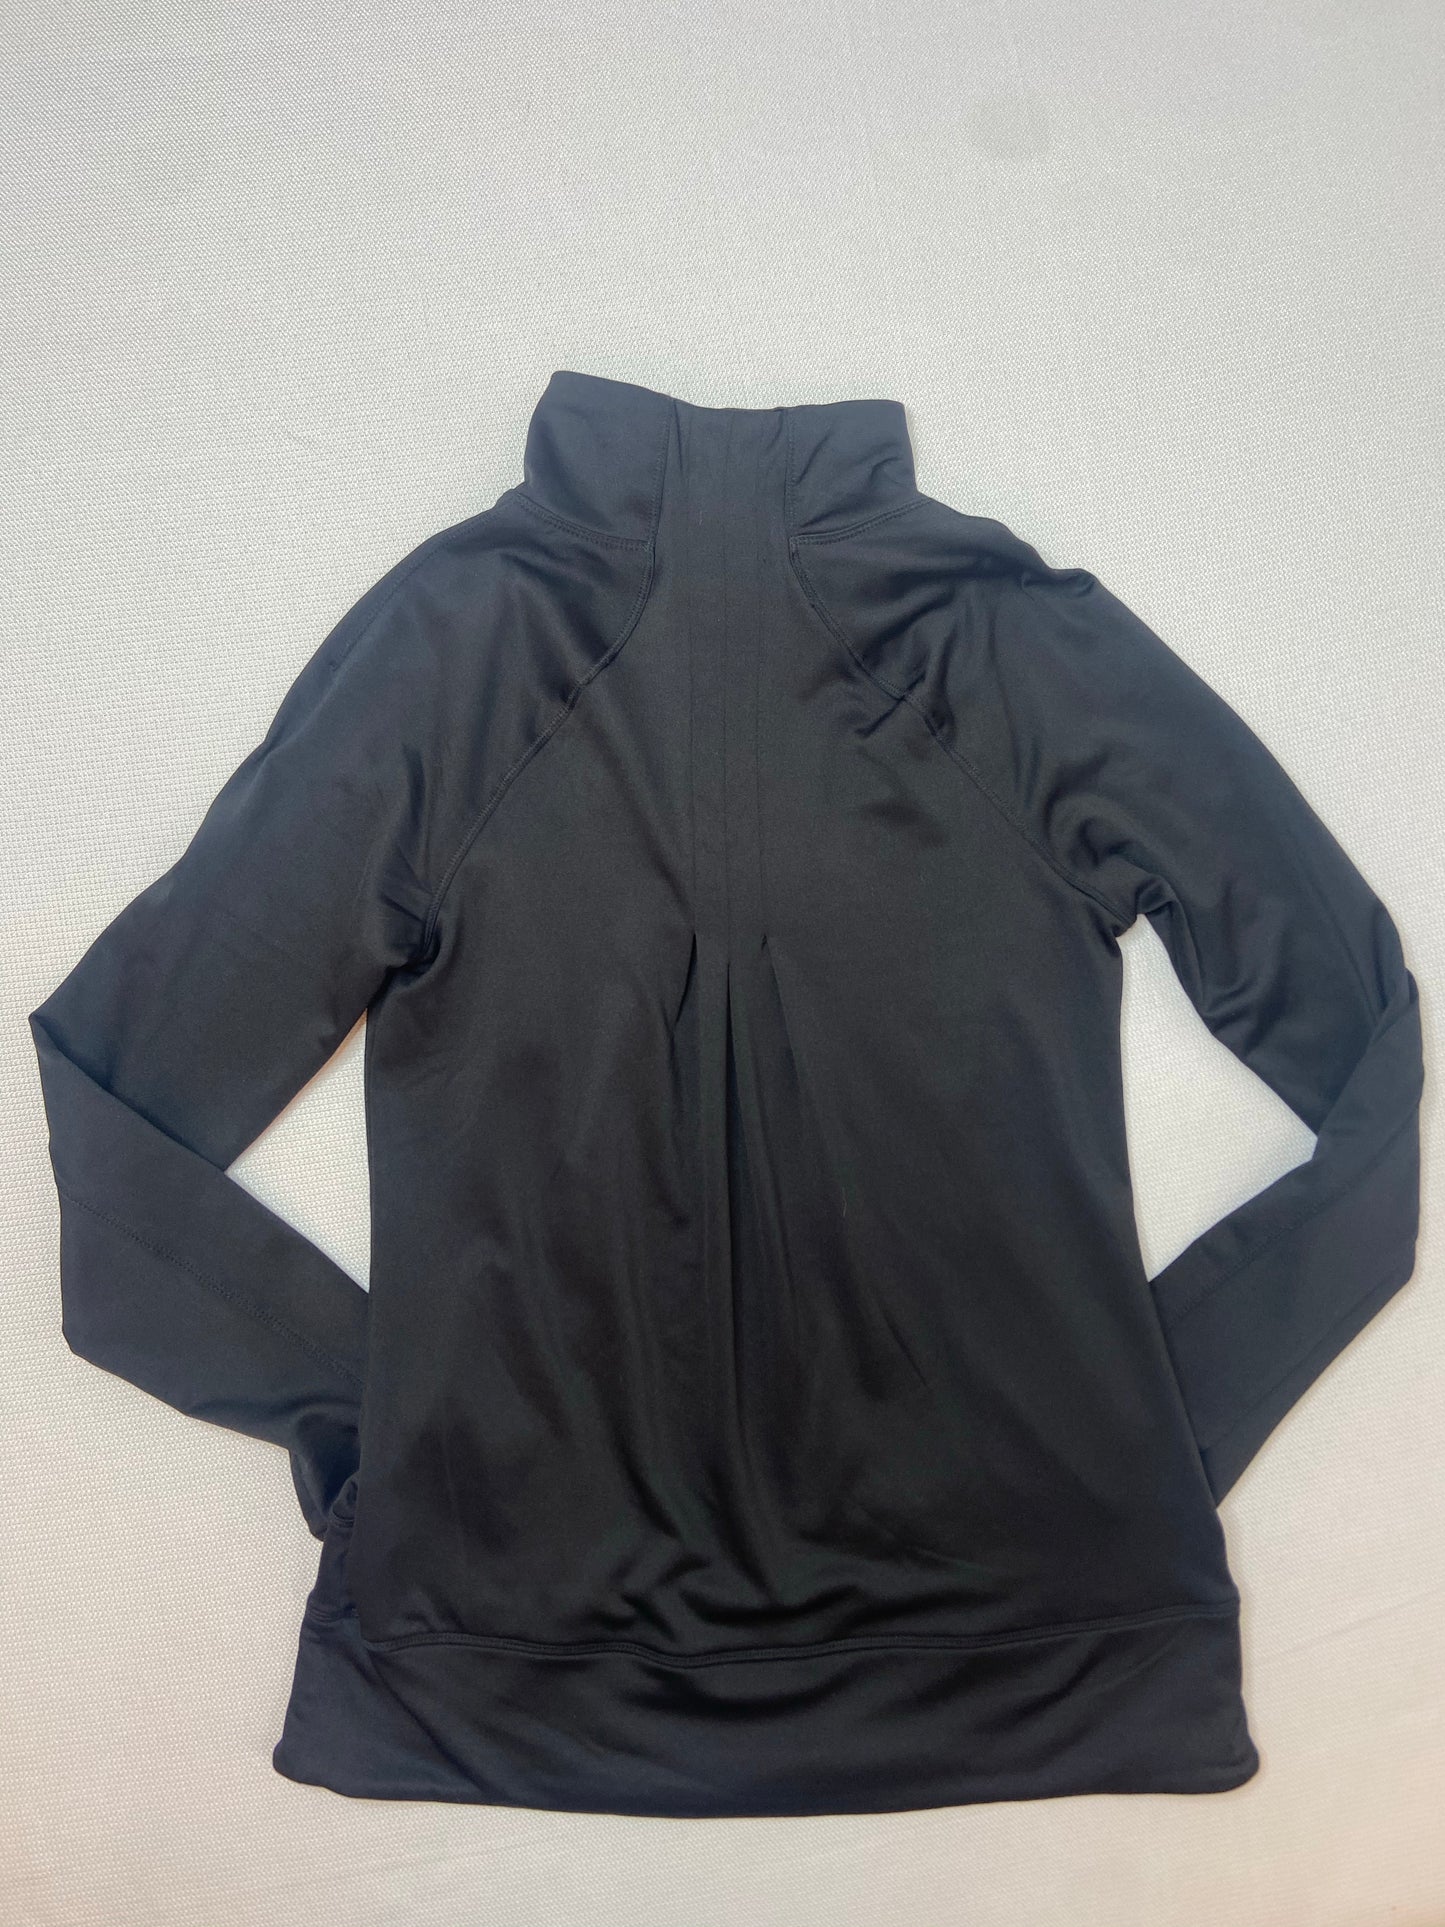 Black Fleece Line Half Zip Pullover- S